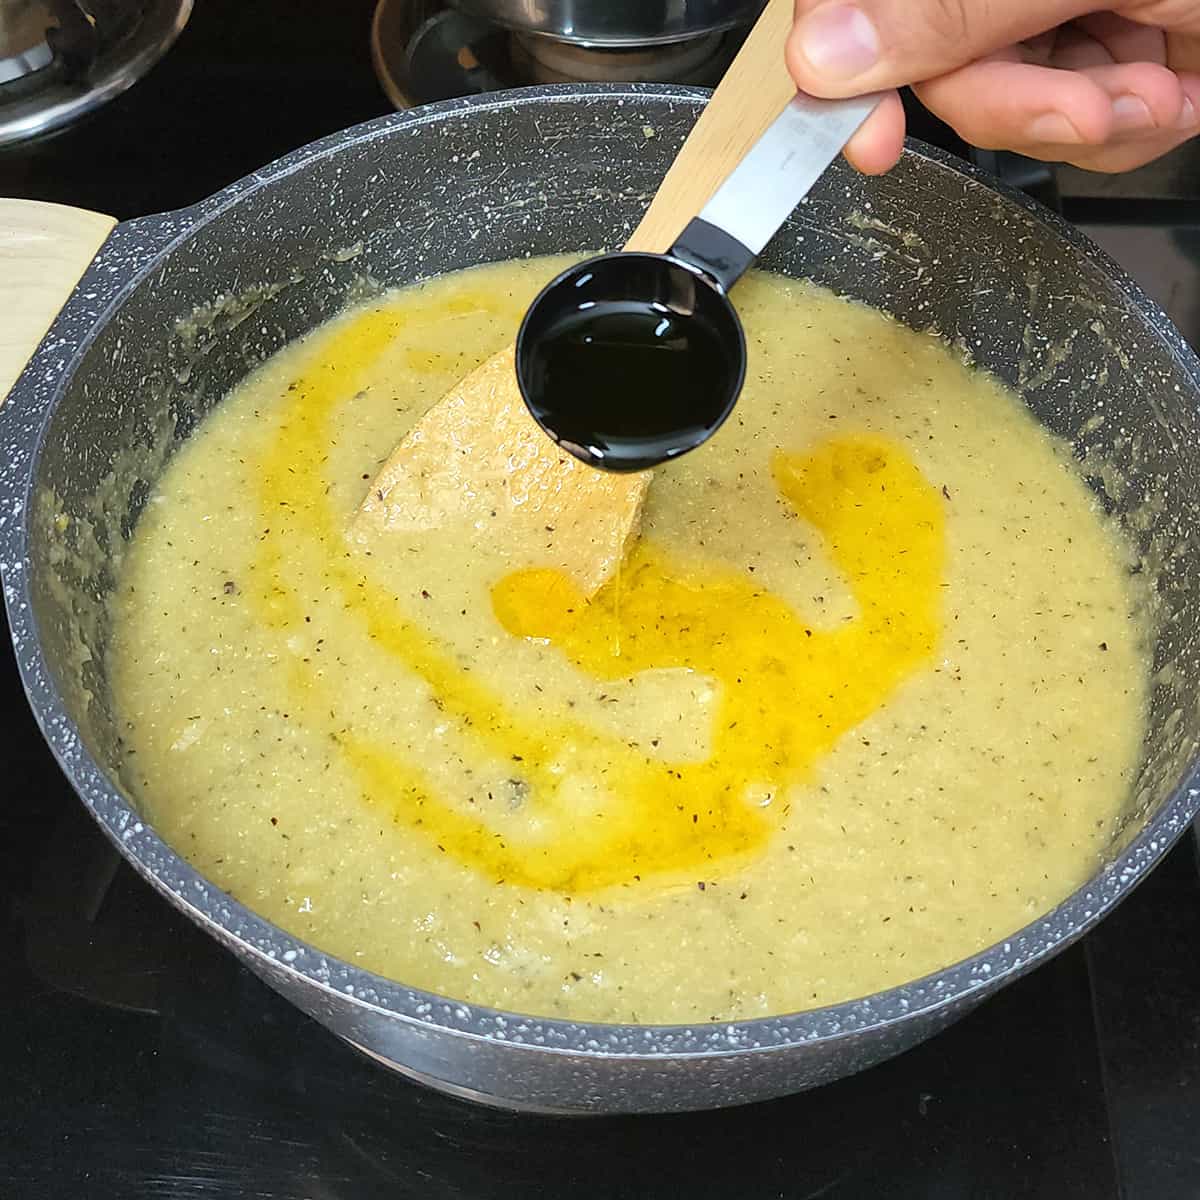 Add clarified butter (homemade ghee).